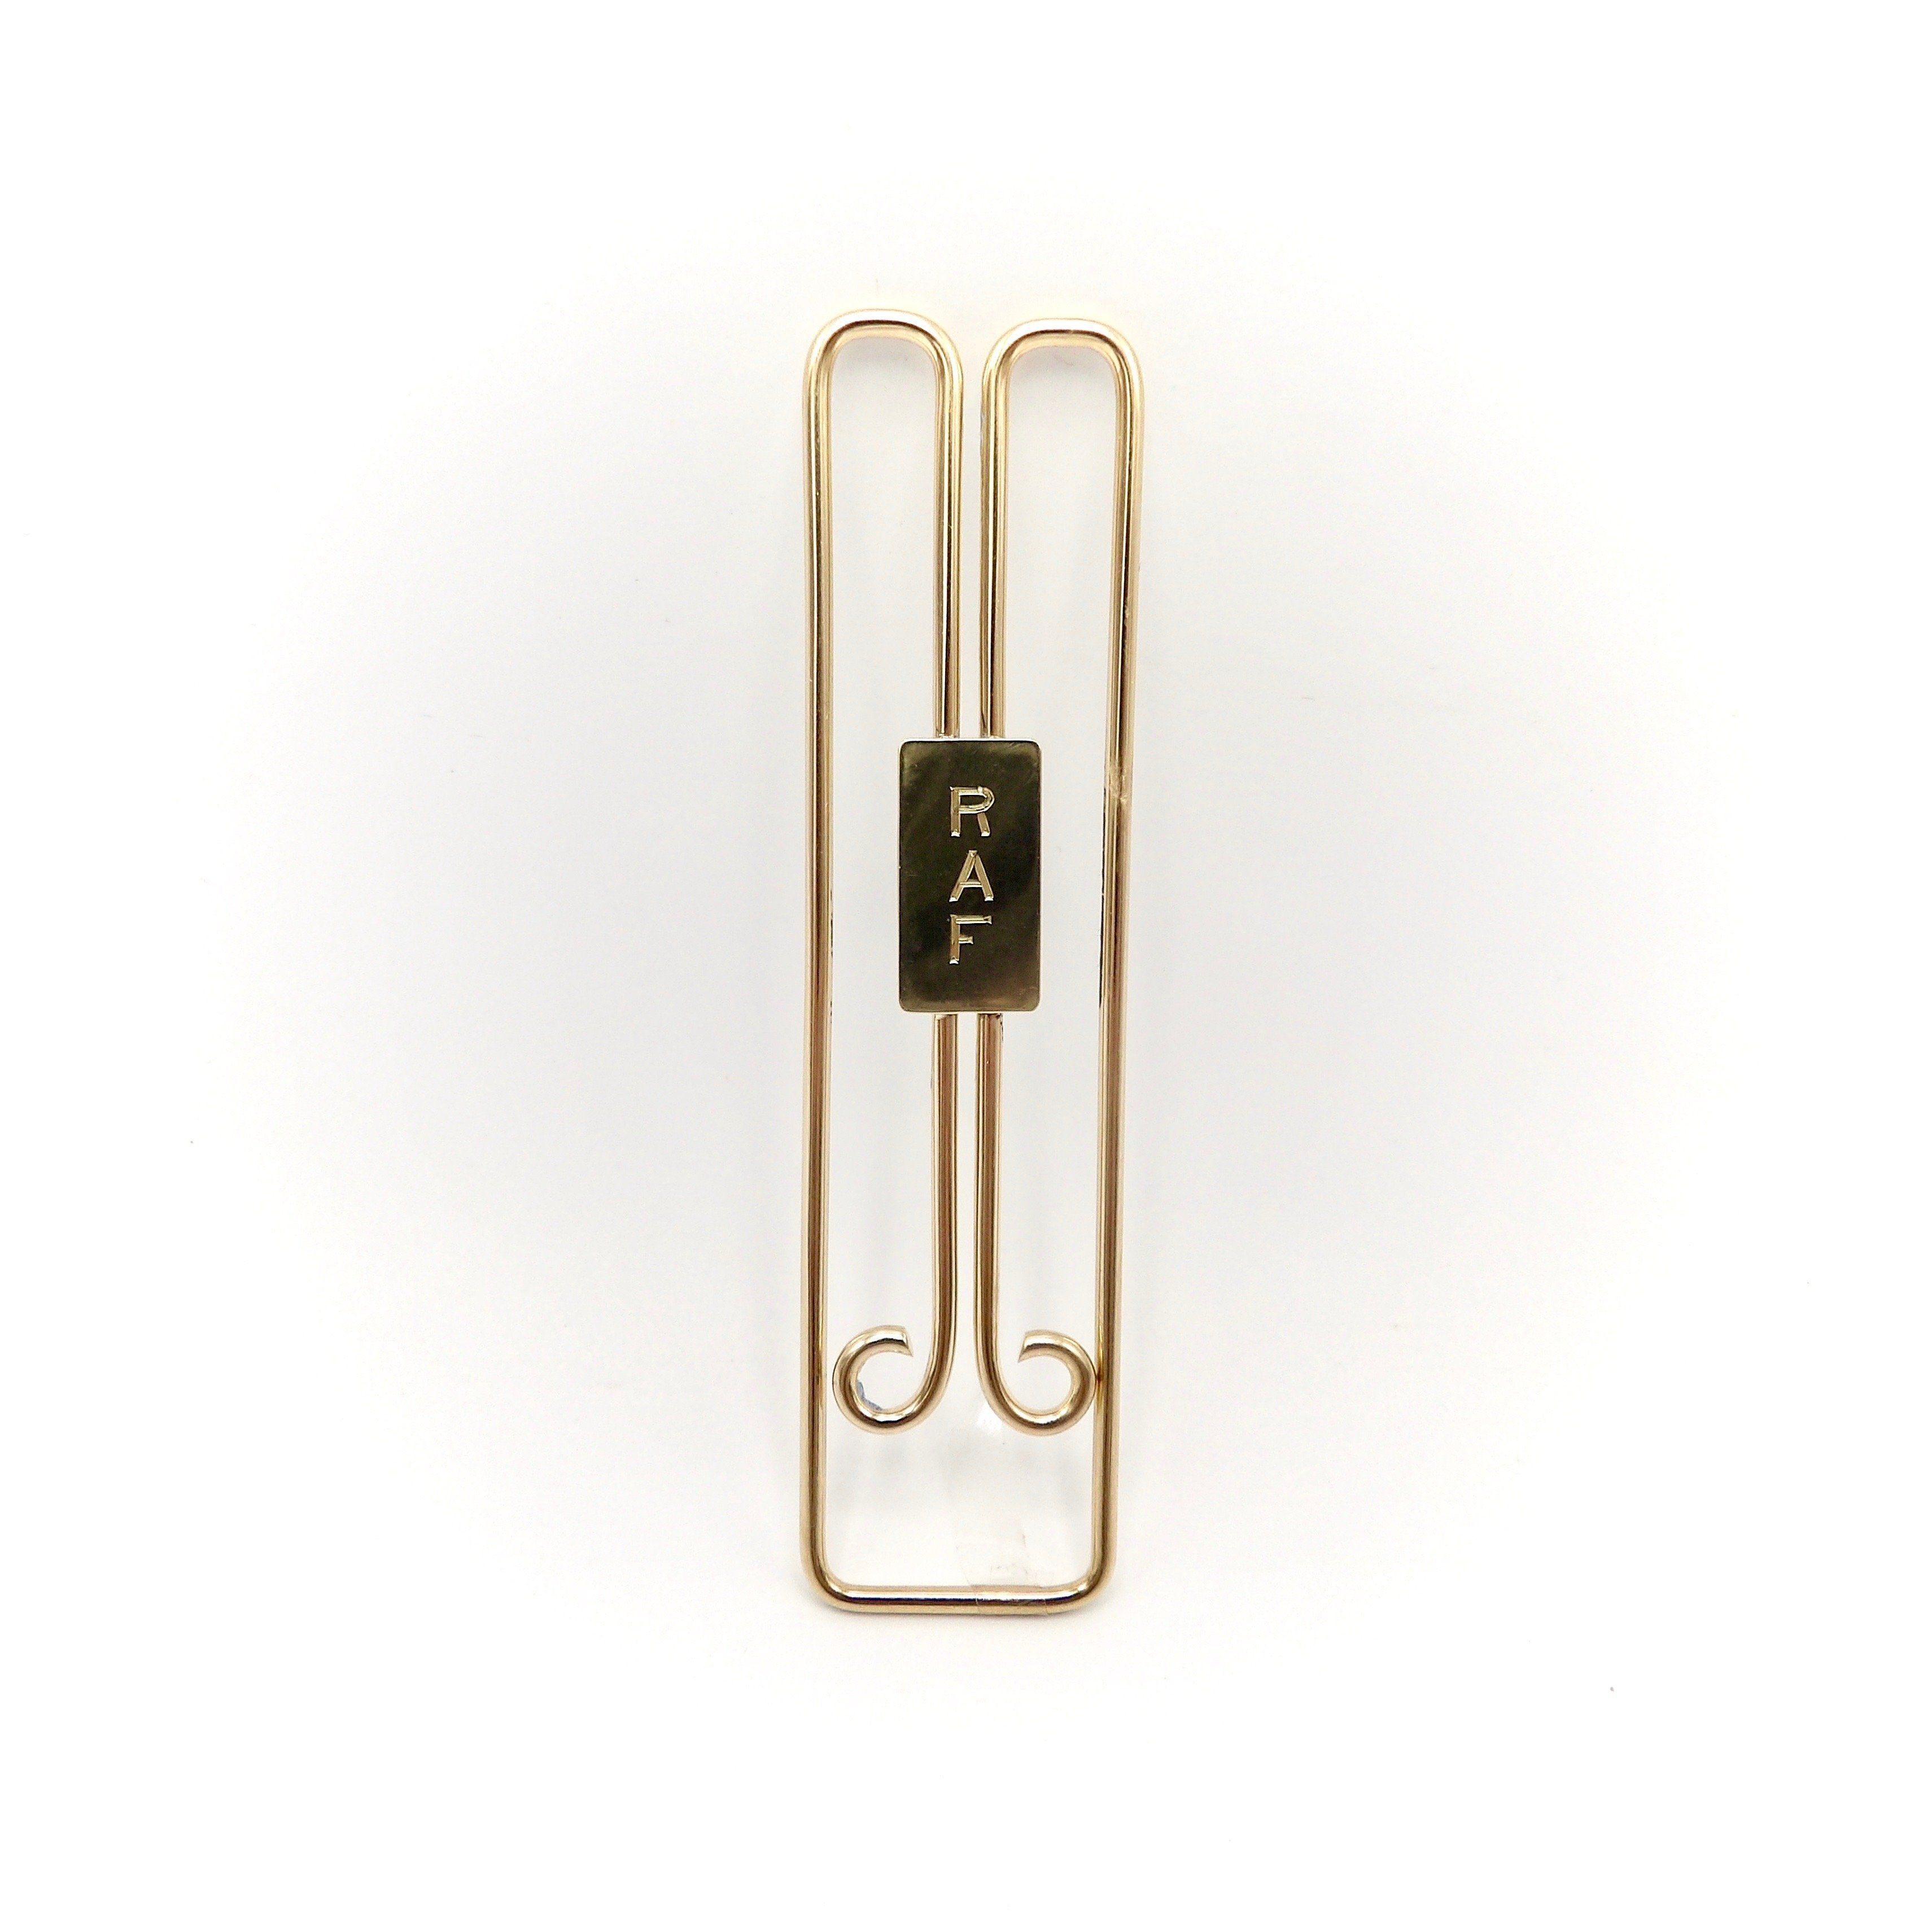 Dies ist eine elegant gestaltete Geldklammer aus 14 Karat Gold von Cartier.  Er hat ein klassisches Retro-Stromlinien-Design.  Der runde, schwere Golddraht mit einer Stärke von 1,8 mm wurde meisterhaft in diese Clipform gebogen. Das Einrollen der